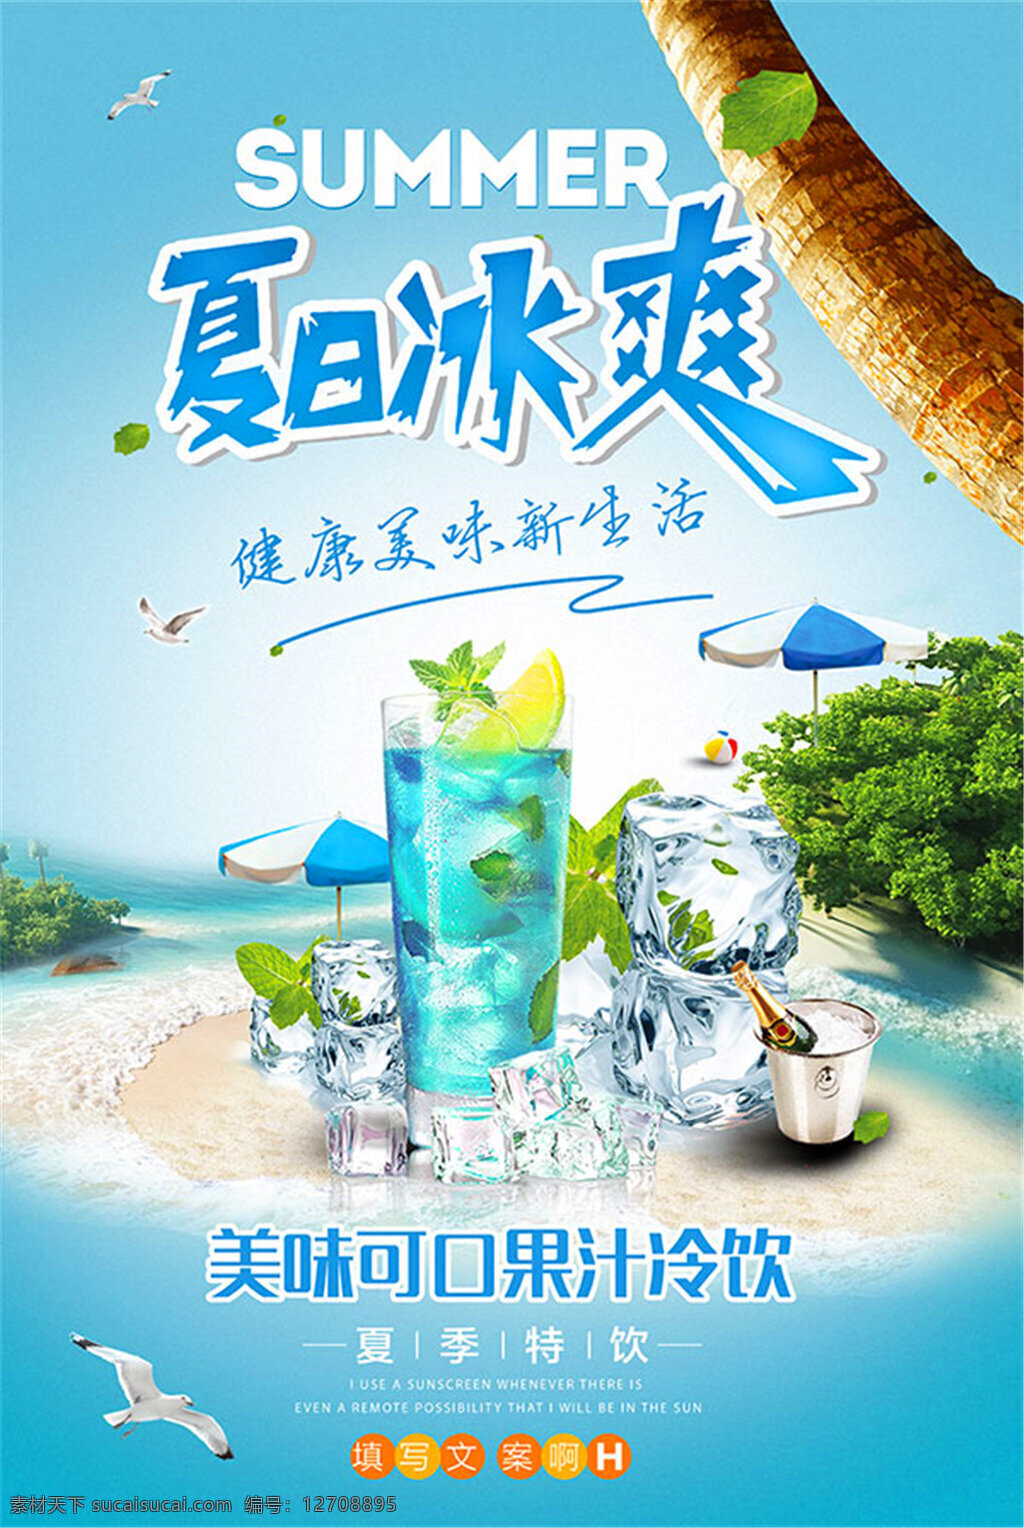 夏季 饮料 果汁 海报 夏天 夏日 夏日冰爽 健康美味 新生活 summer 冰块 美味可口 果汁冷饮 夏季特饮 海滩 沙滩